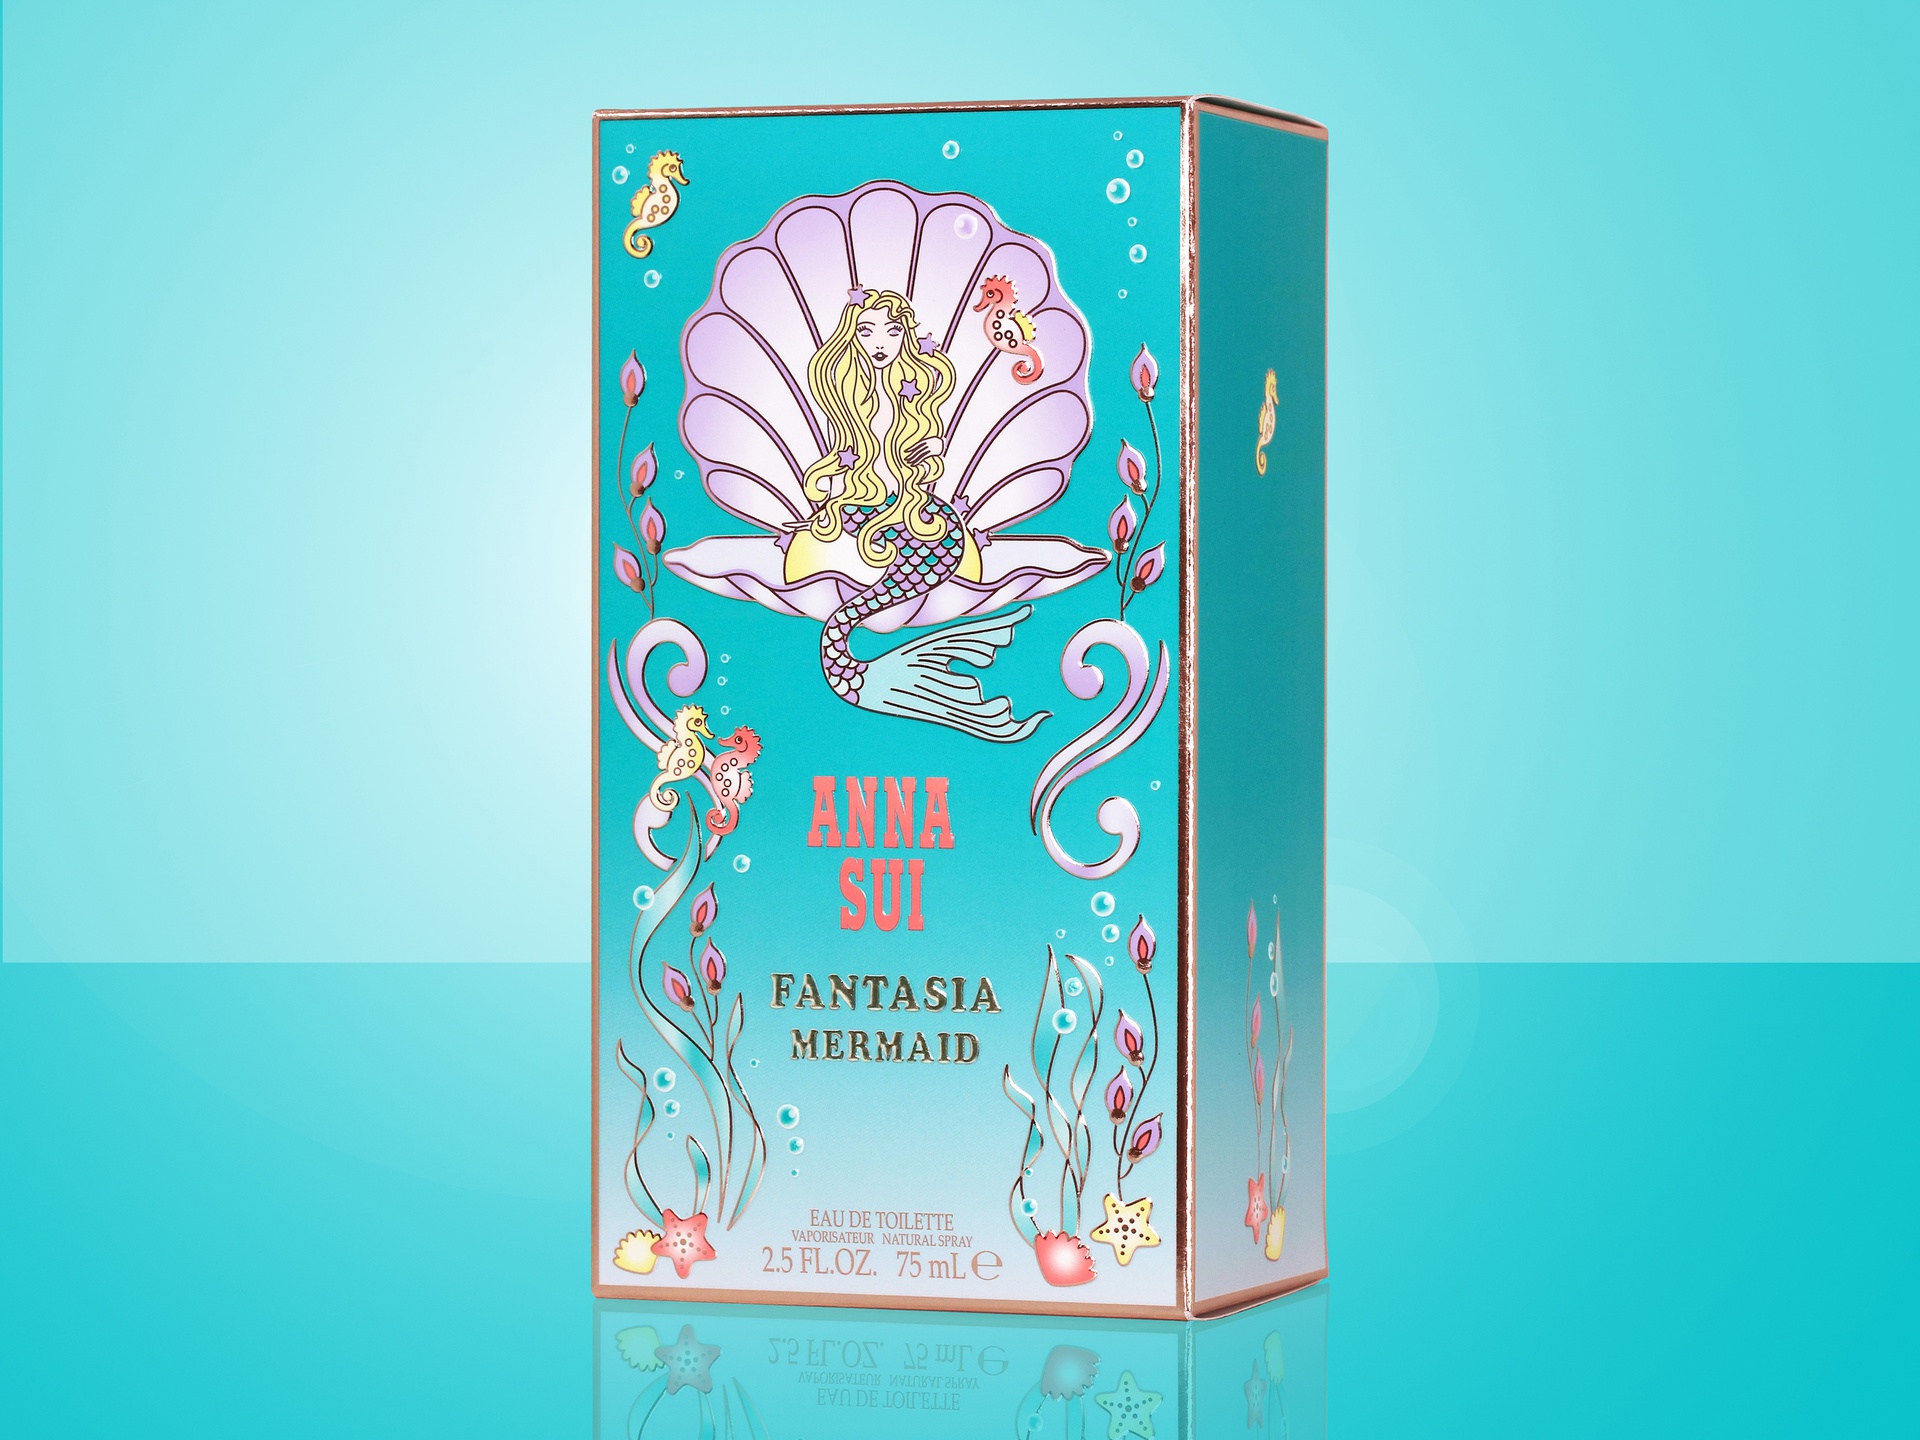 Anna Sui Fantasia Mermaid packaging